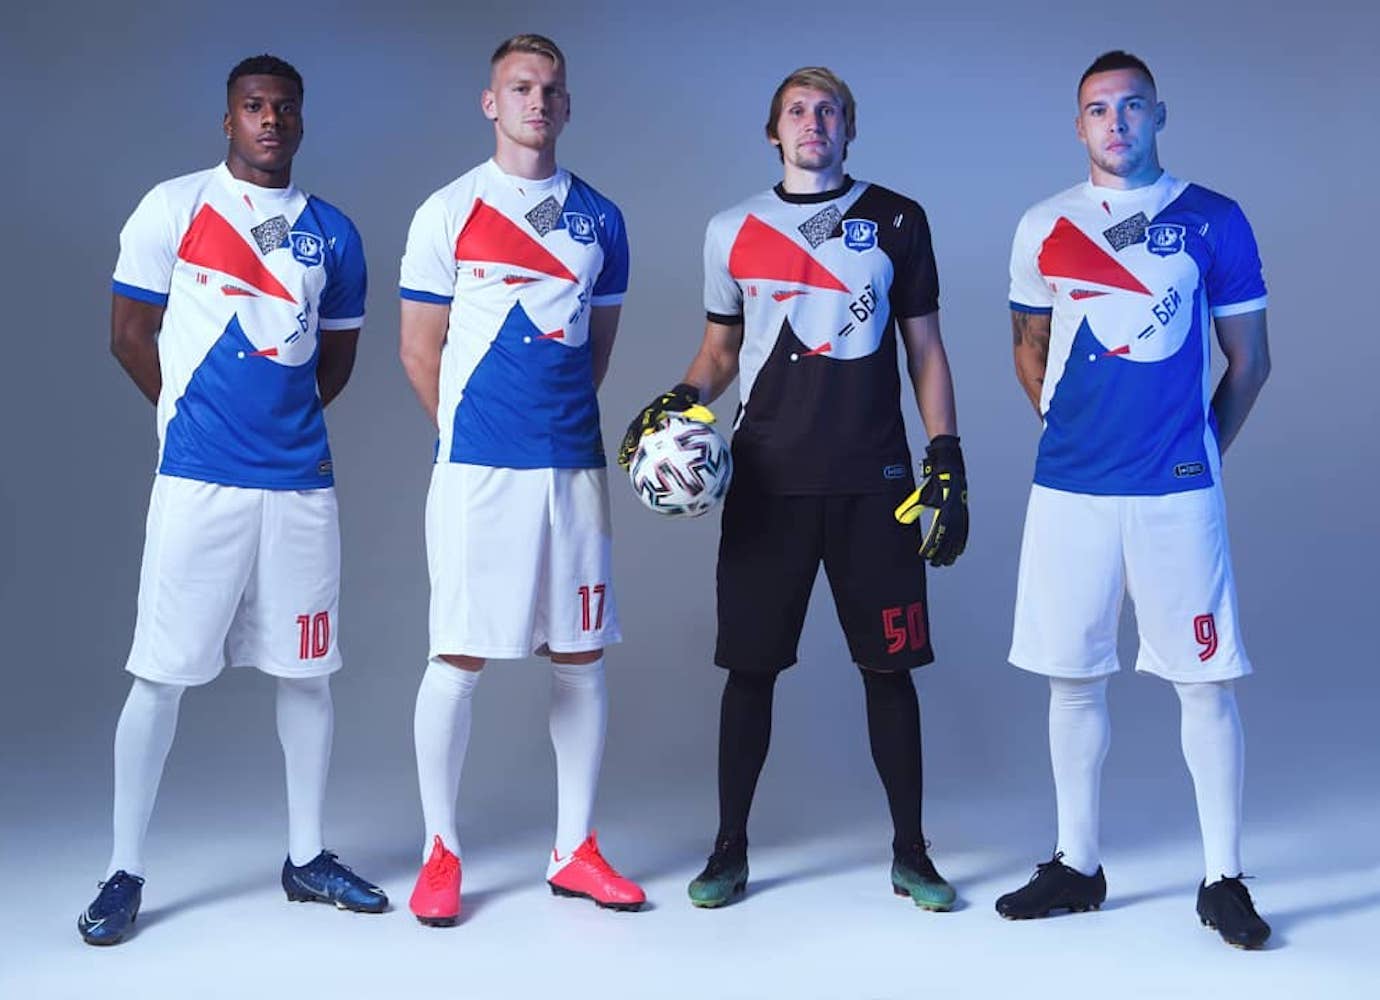 Belarusian football team releases new kit inspired by avant-garde artwork